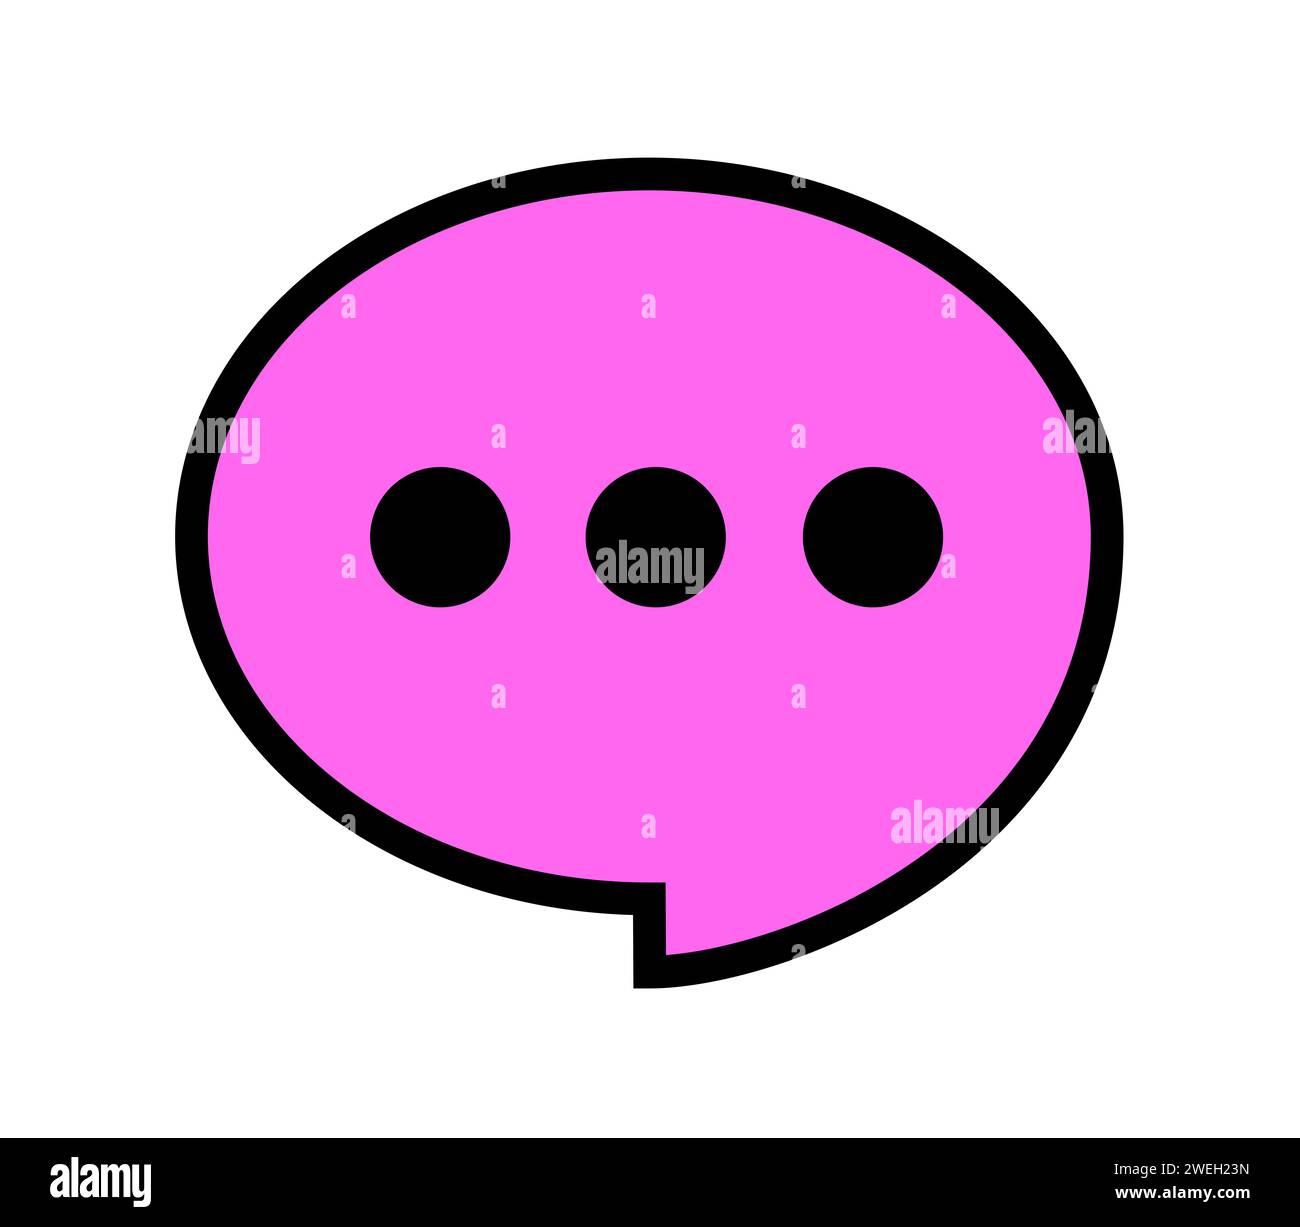 Pinkfarbene Sprechballon und Blase als Metapher für süßes Gespräch, Kompliment und Schmeichelei. Angenehme und süße Art der Kommunikation und Unterhaltung. Stockfoto